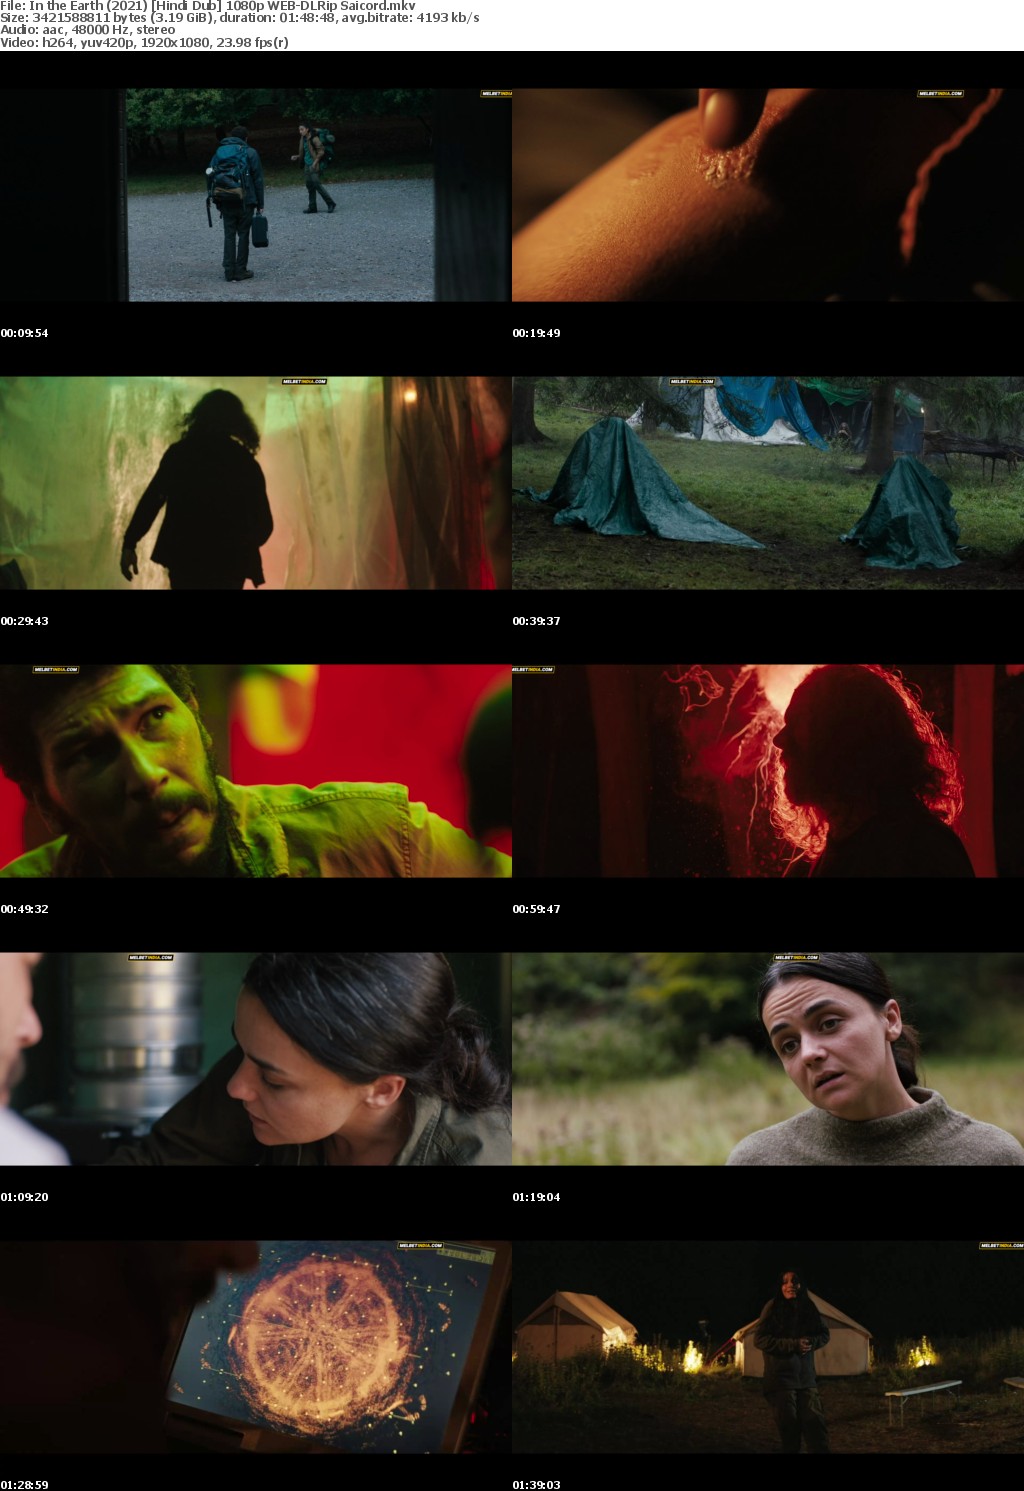 In the Earth (2021) Hindi Dub 1080p WEB-DLRip Saicord